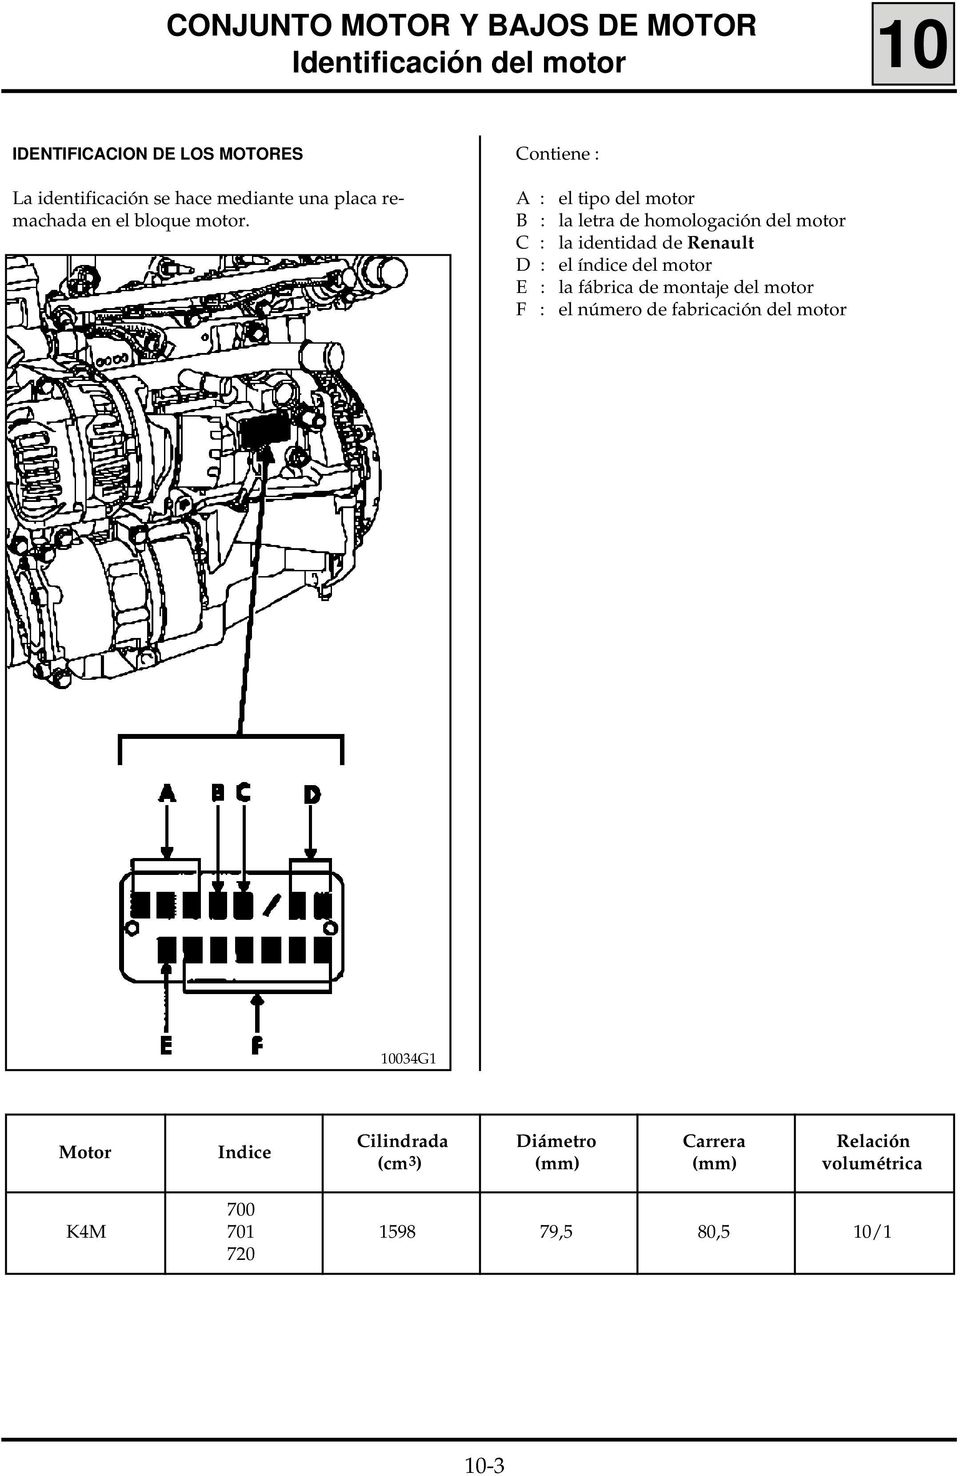 Contiene : A : el tipo del motor B : la letra de homologación del motor C : la identidad de Renault D : el índice